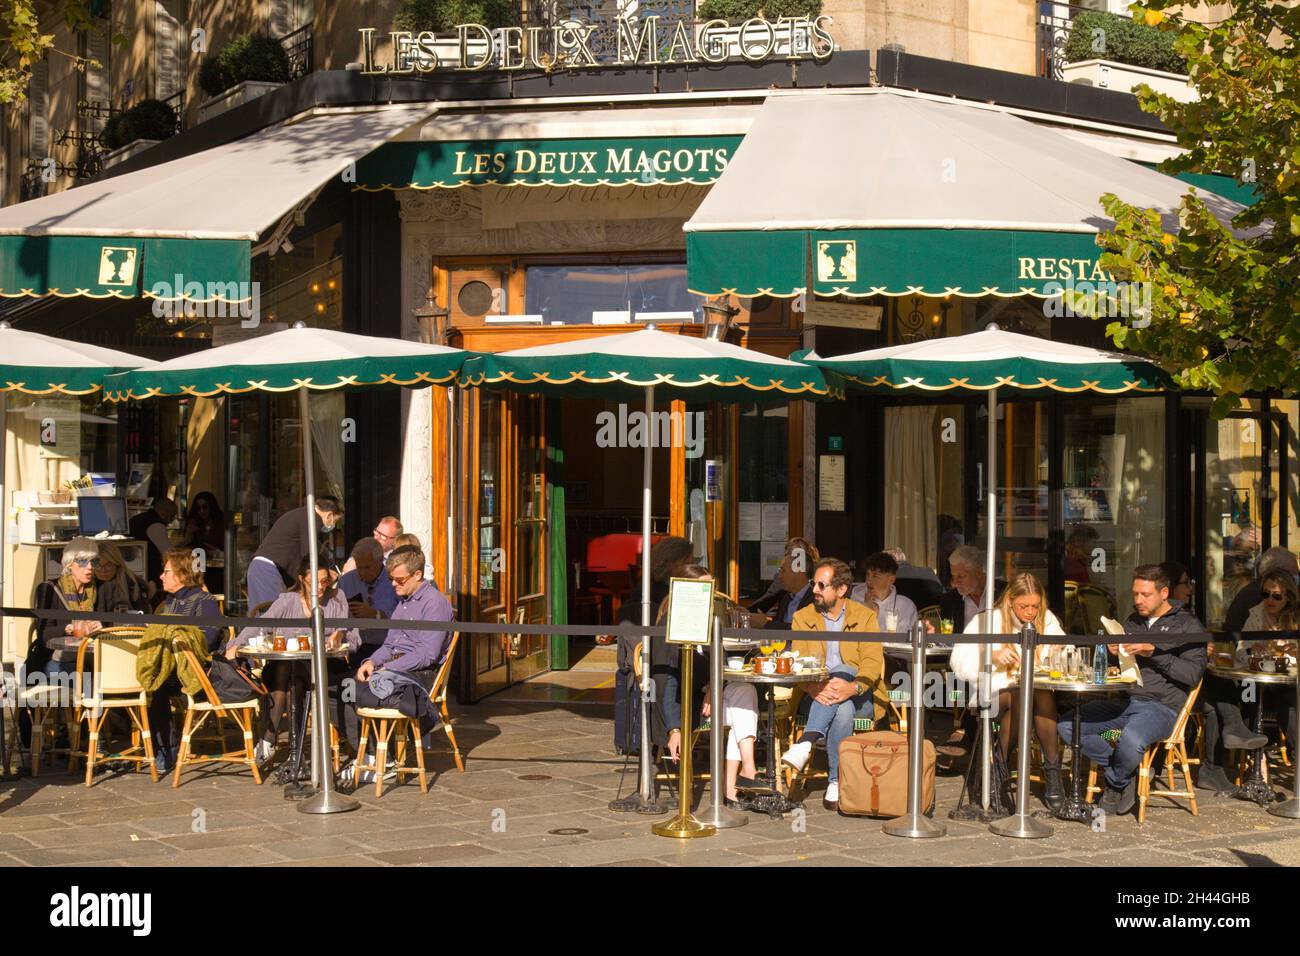 France, Paris, Les Deux Magots, cafe, restaurant, people, Stock Photo